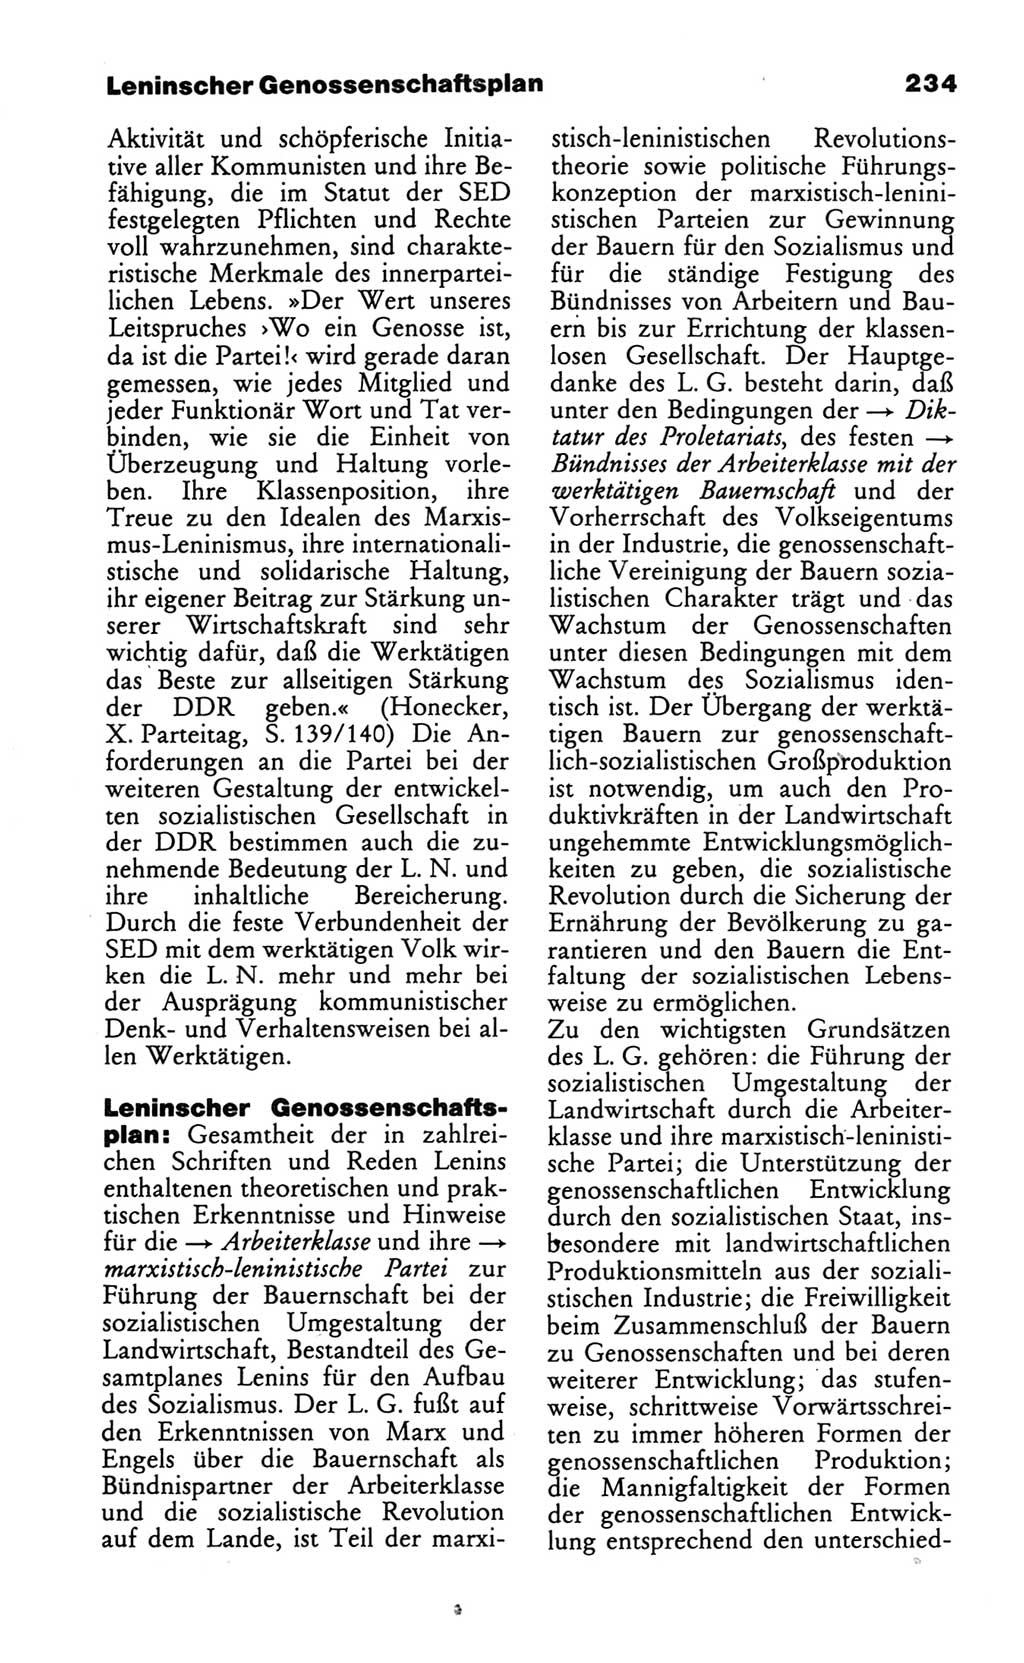 Wörterbuch des wissenschaftlichen Kommunismus [Deutsche Demokratische Republik (DDR)] 1986, Seite 234 (Wb. wiss. Komm. DDR 1986, S. 234)